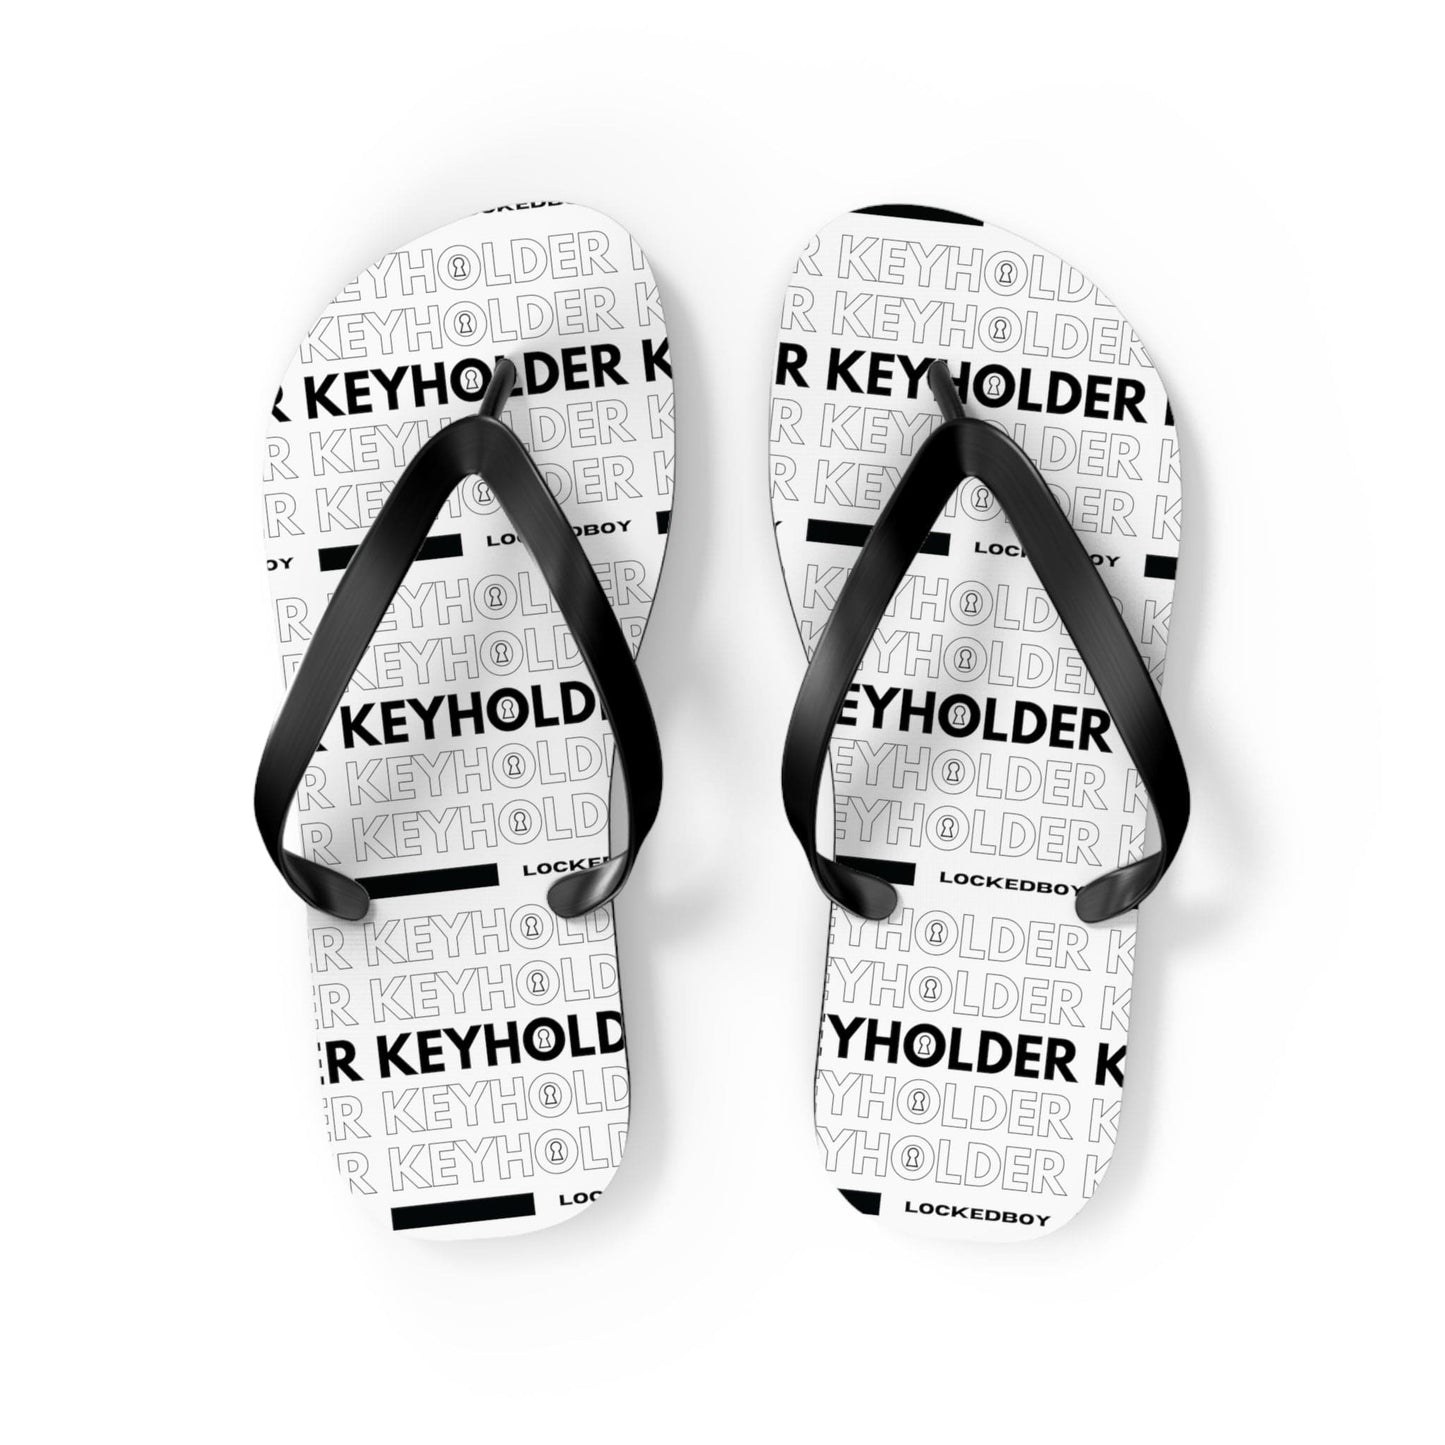 Shoes M / Black sole KeyHolder Bag Inspo Unisex Flip-Flops LEATHERDADDY BATOR